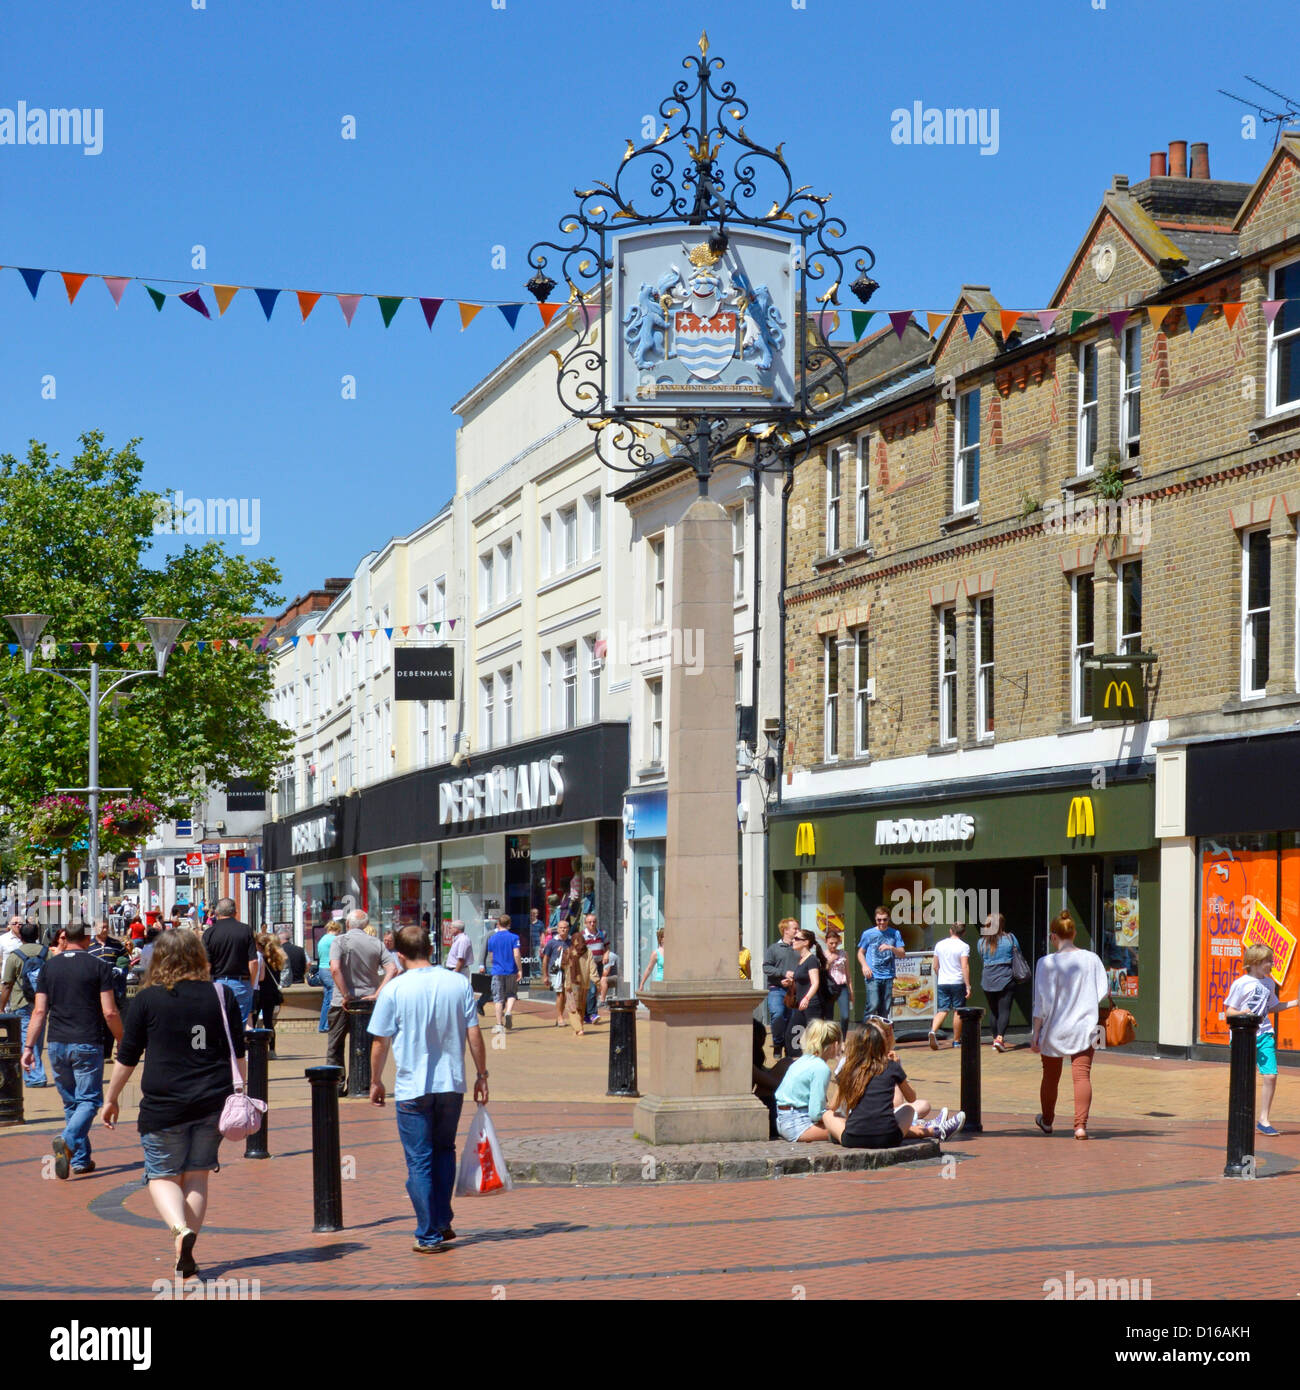 Ciel bleu d'été pour les amateurs de shopping dans les boutiques de Chelmsford City High Street & County Town Tmanteau of Arms Sign McDonalds Et Debenhams, Essex, Angleterre, Royaume-Uni Banque D'Images